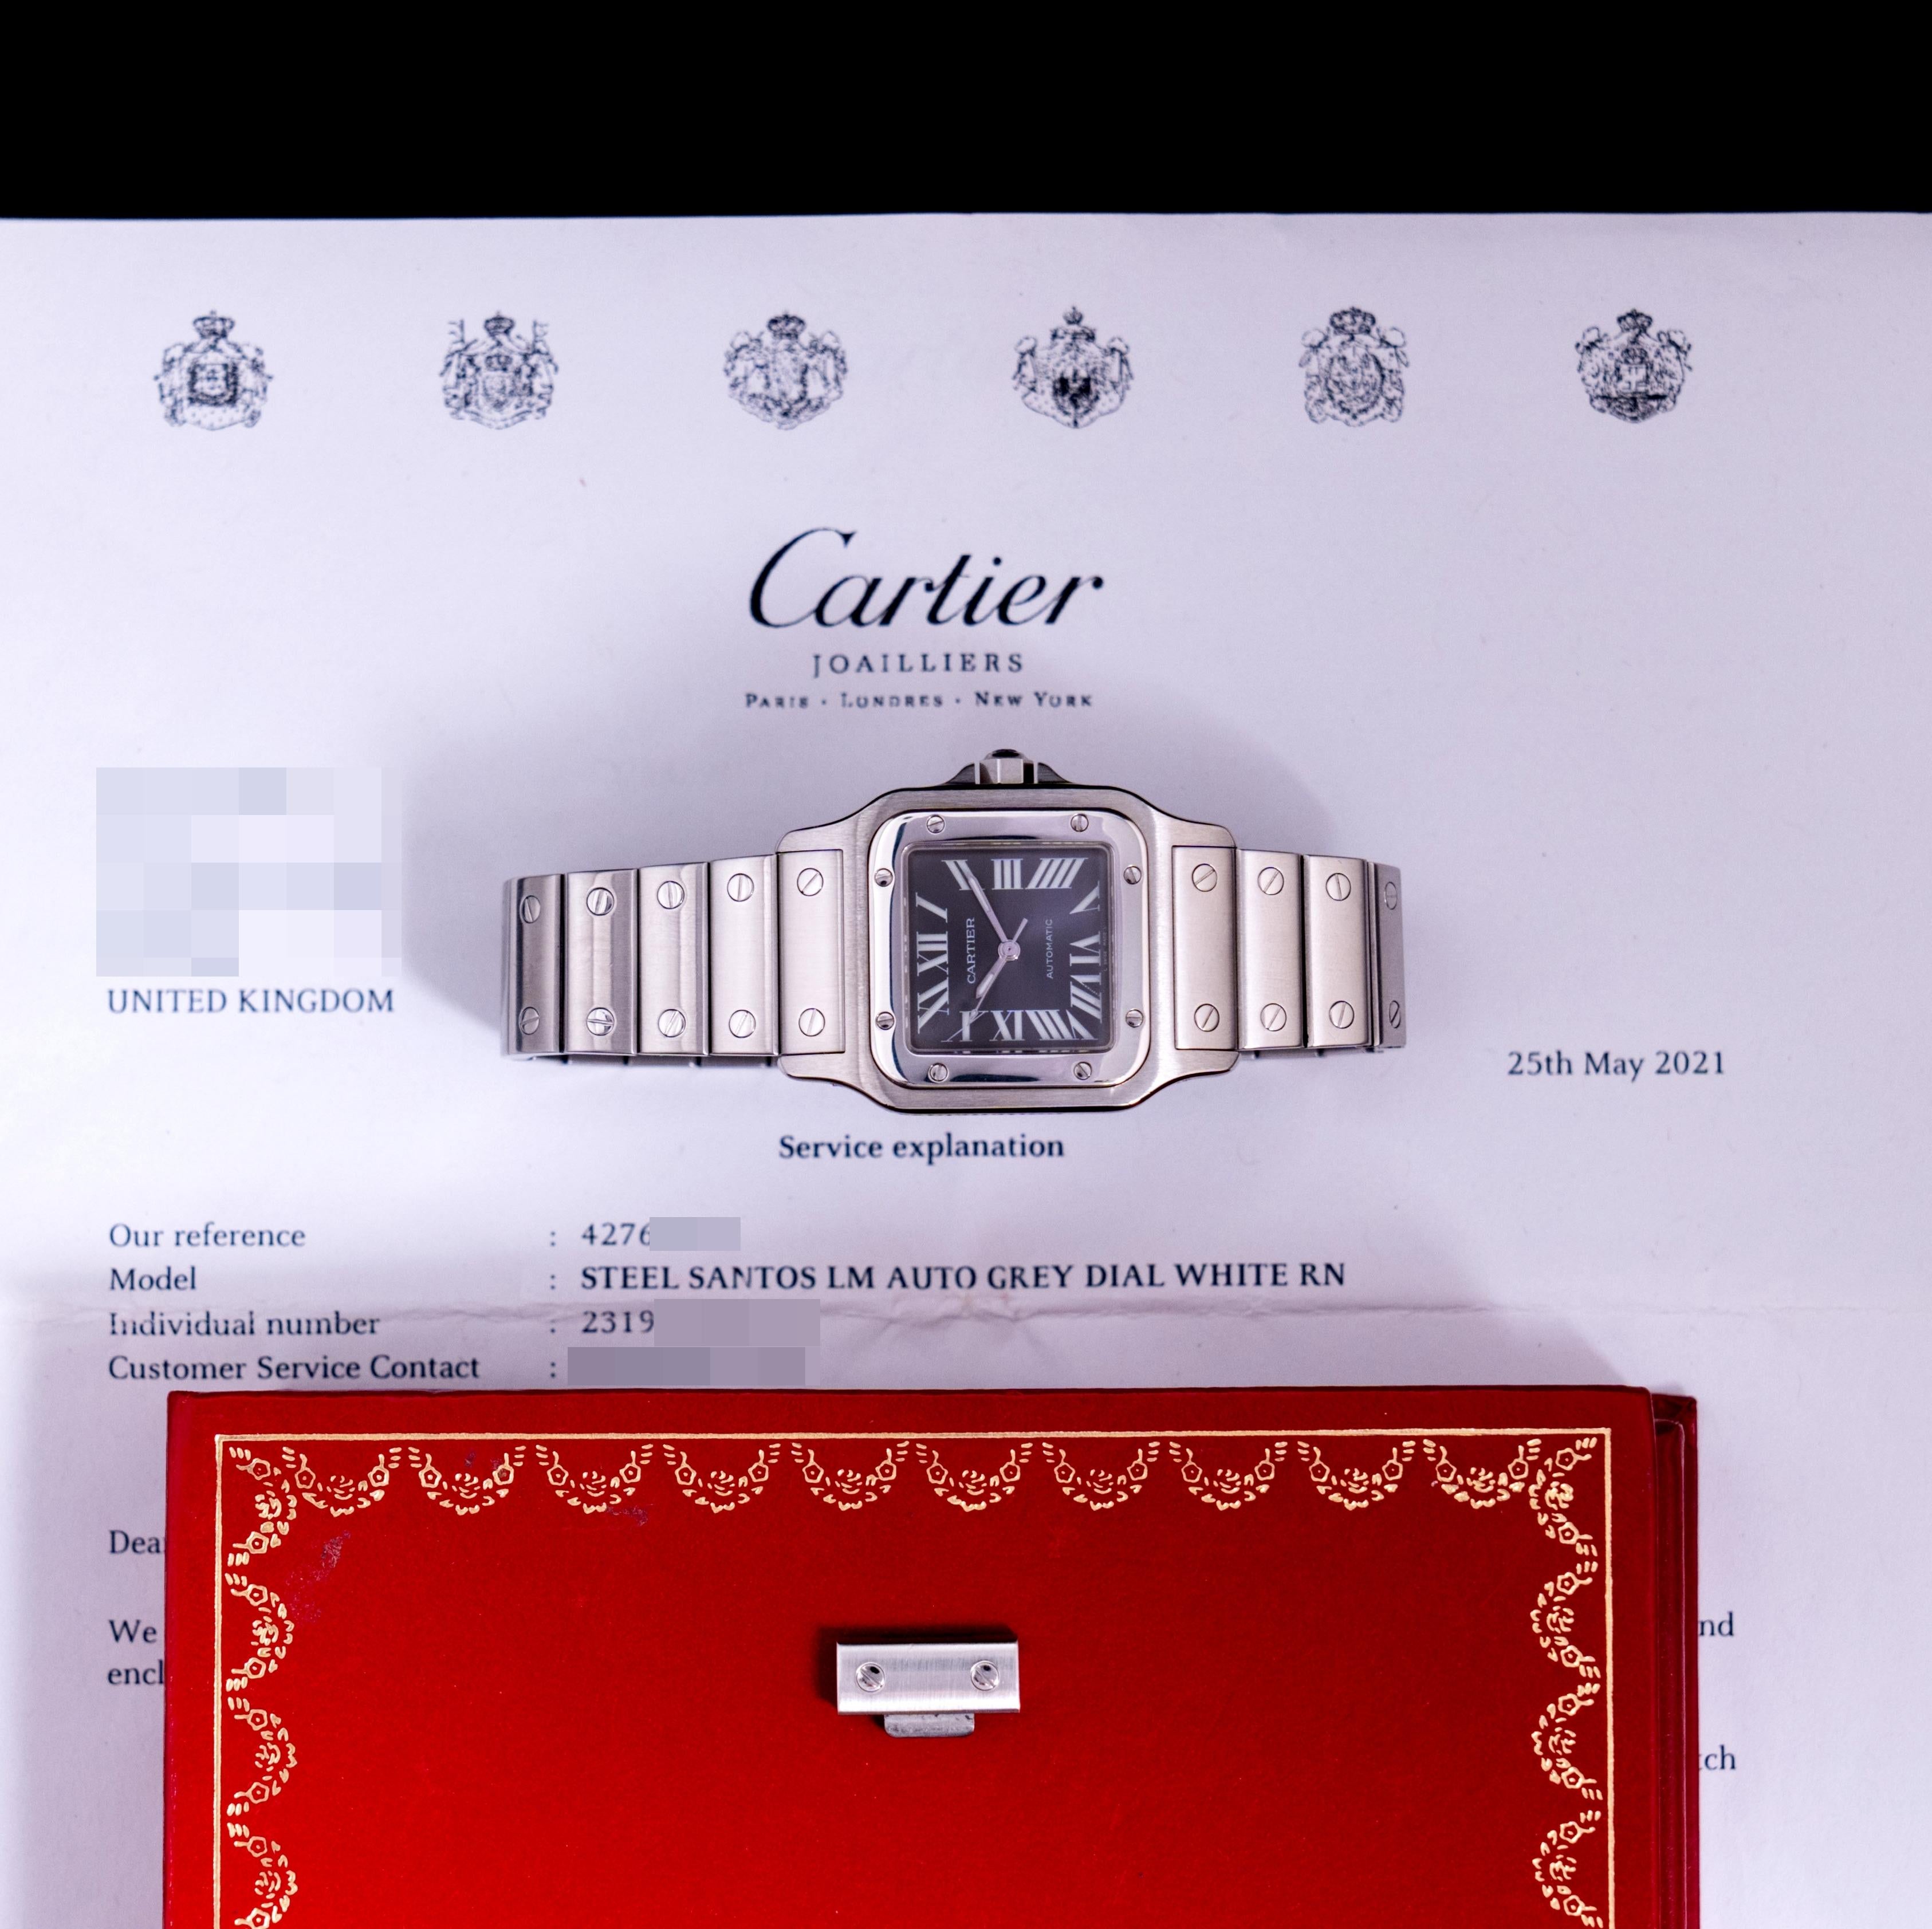 Marque : Cartier
Modèle : Santos Galbée 2319
Année : 2002
Numéro de série : 949xxxxx
Référence : C03912

Voici l'édition limitée Santos Galbée 2319 de Cartier. Présentée lors du salon SIHH 2002 à Singapour, elle a été limitée à 2000 pièces. En